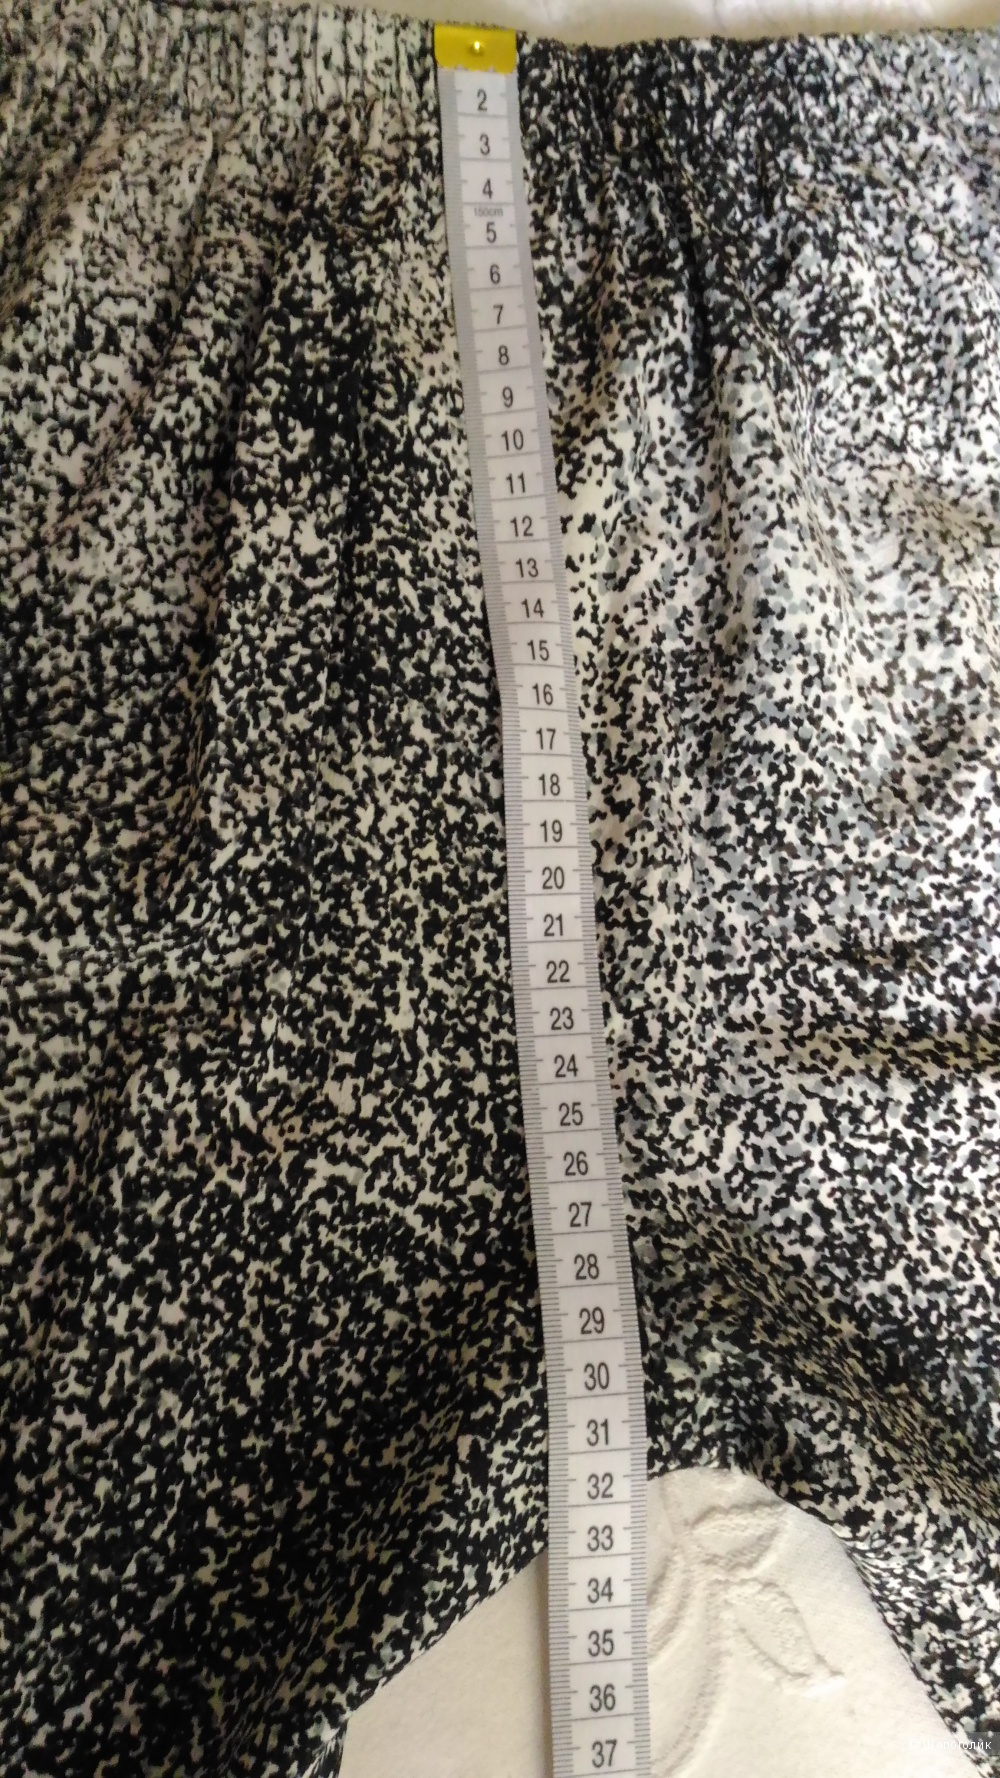 Шелковые брюки Kenzo, 36 фр, на 44-небольшой 46 ру